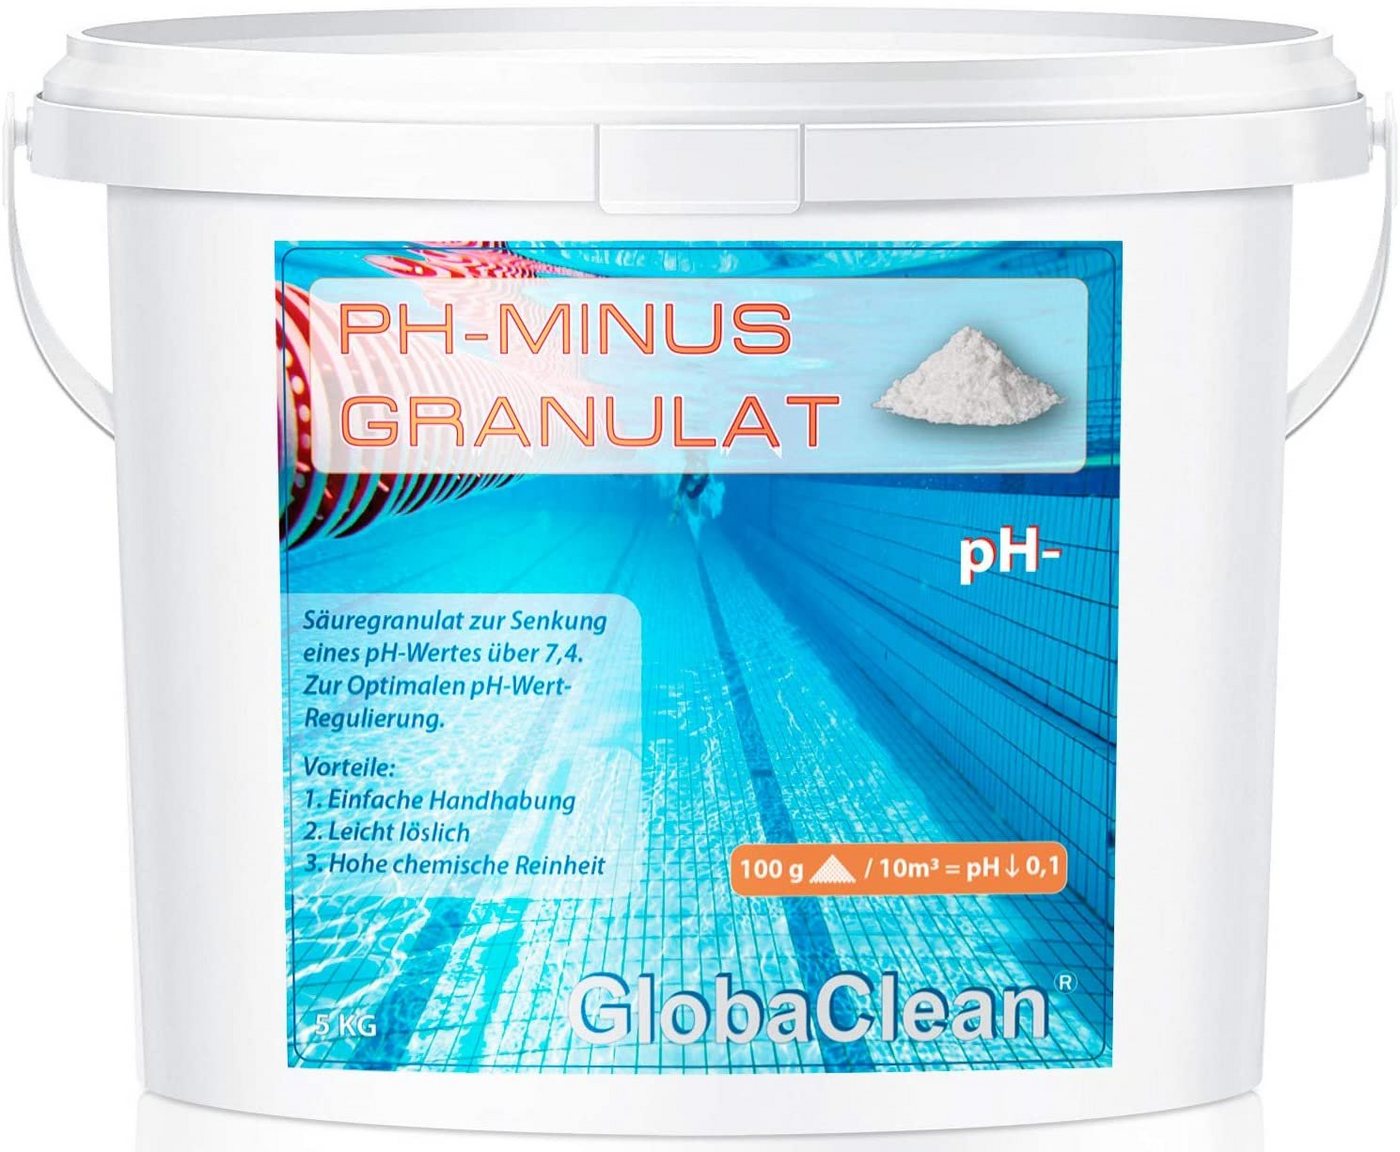 GlobaClean Poolpflege 5 kg pH-Minus Granulat von GlobaClean